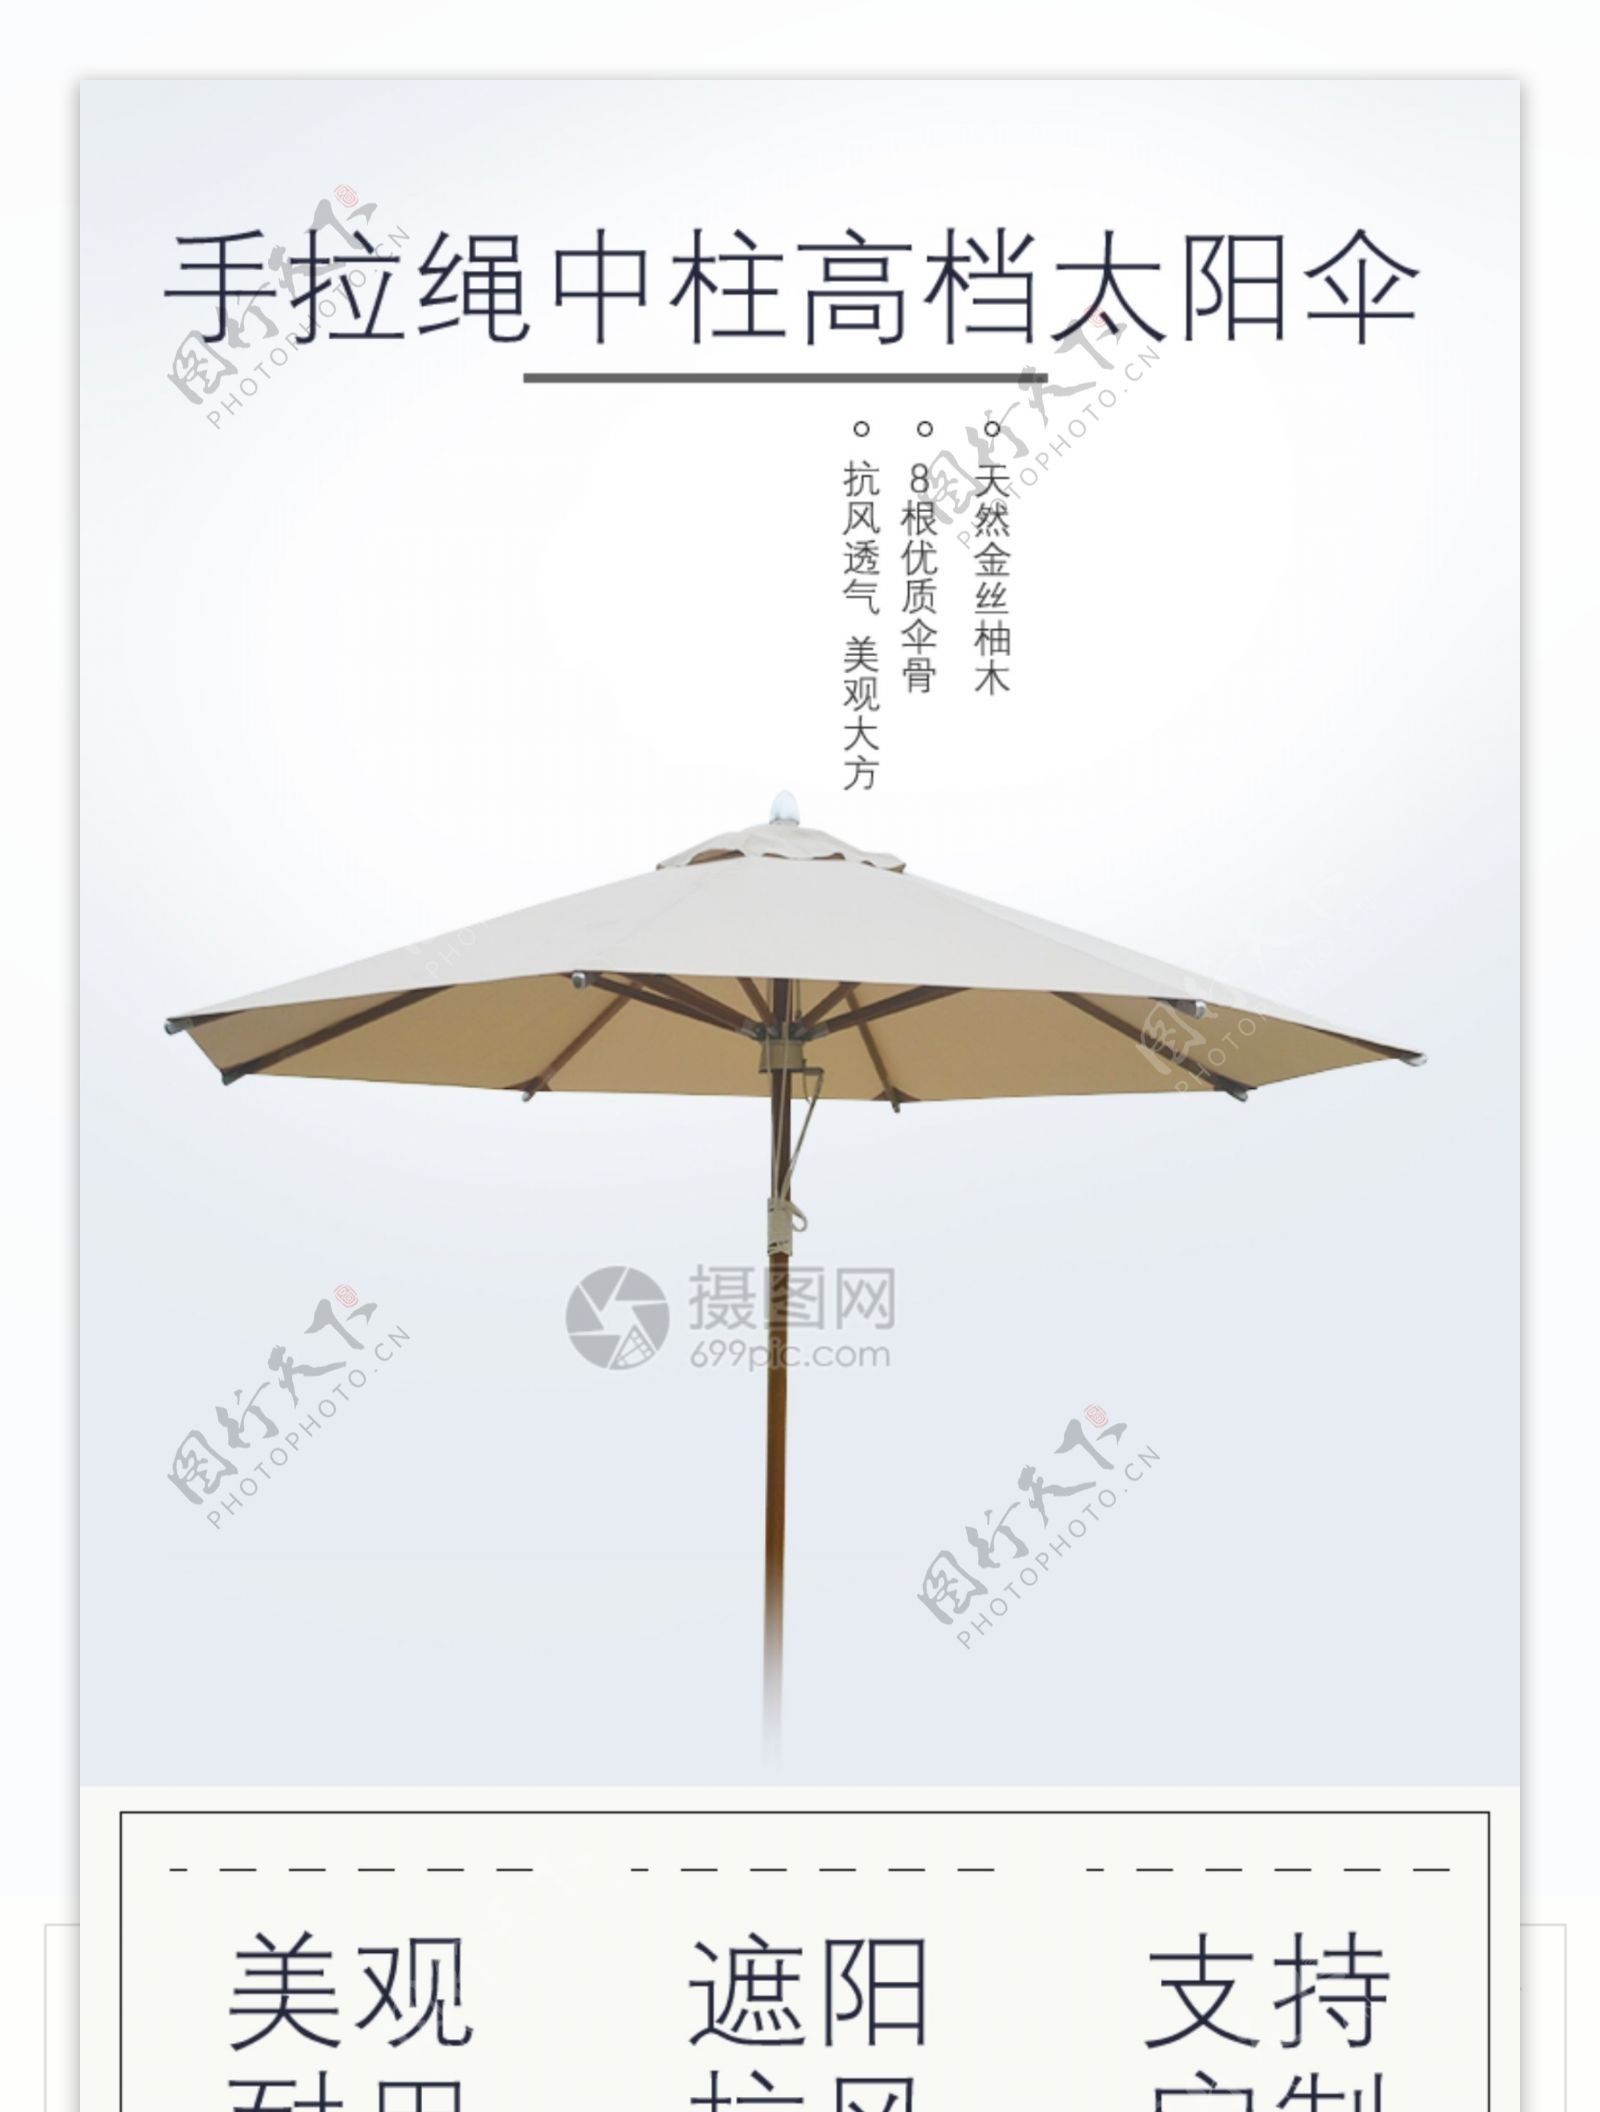 雨伞简约风格淘宝详情页